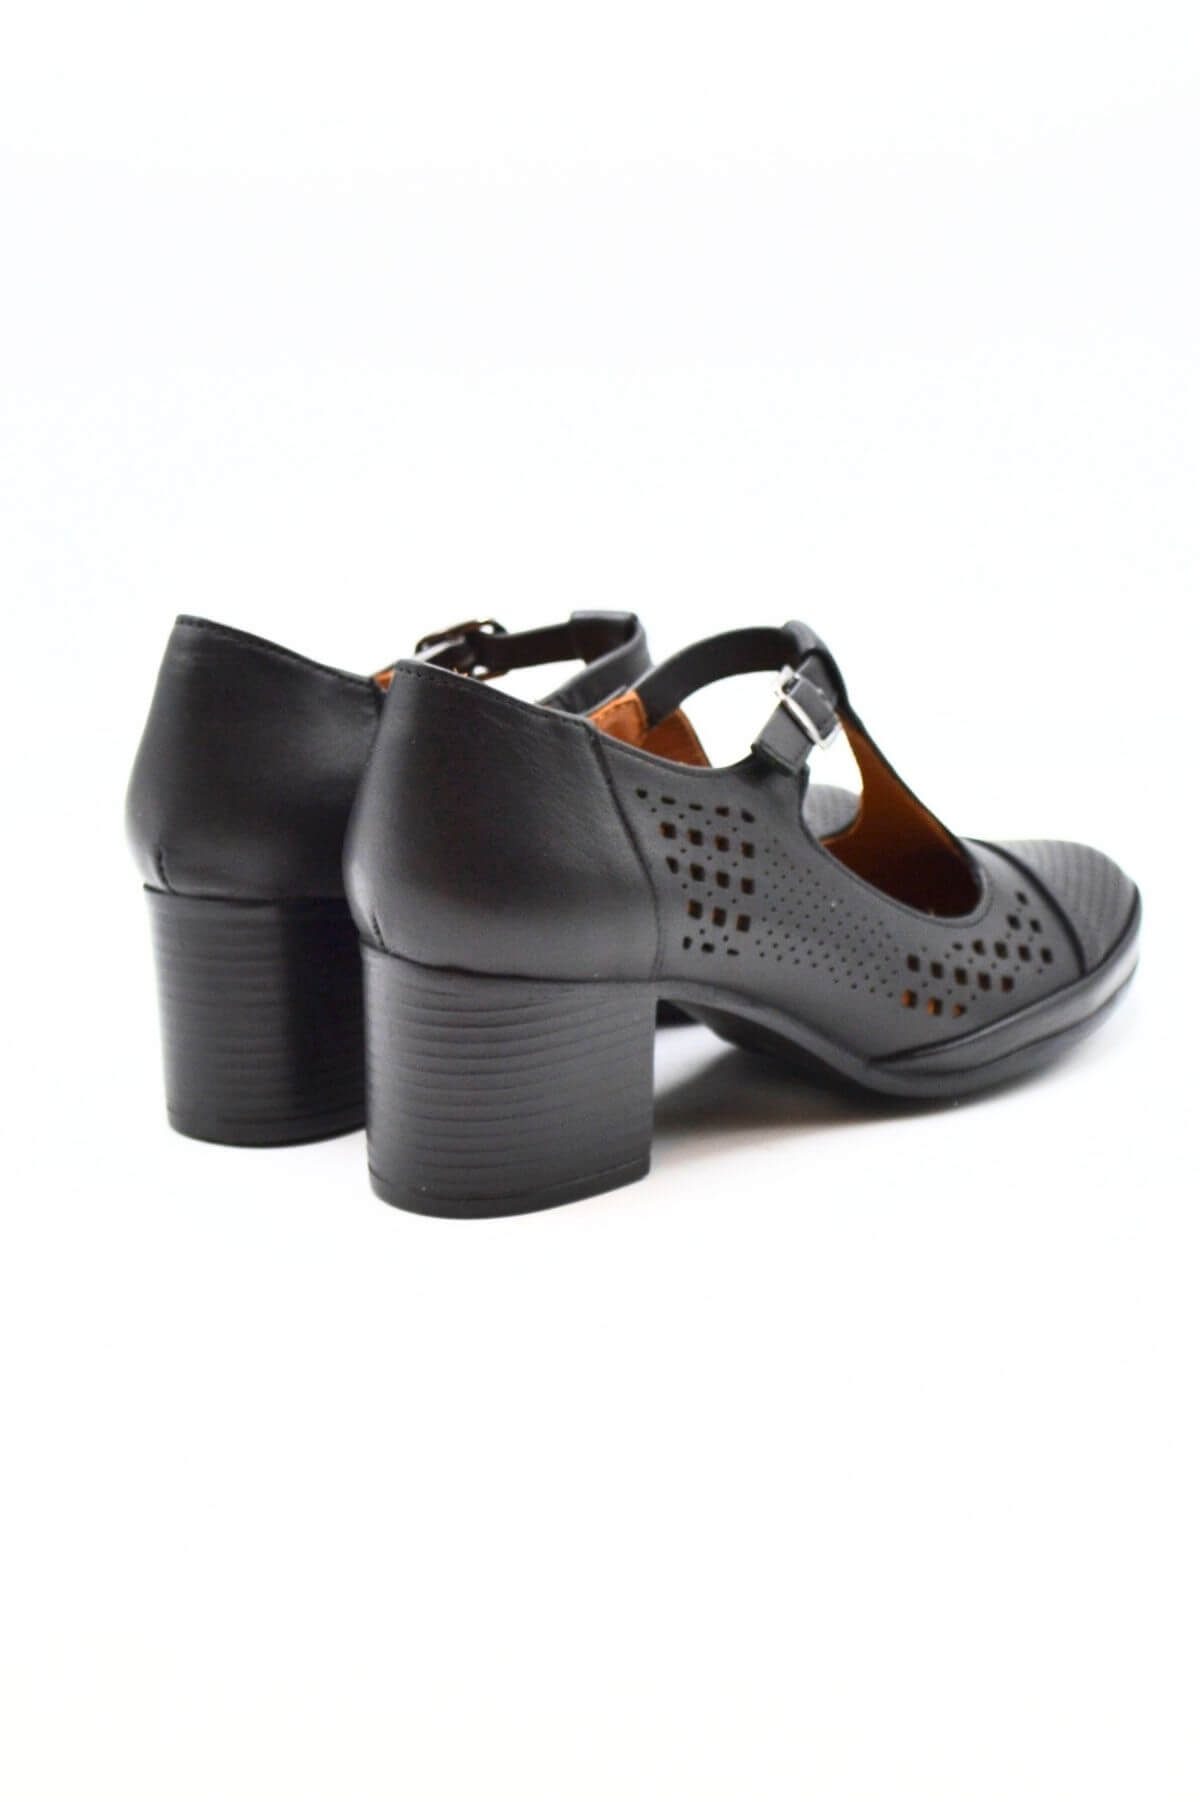 Kadın Yazlık Topuklu Deri Ayakkabı Siyah 1911923Y